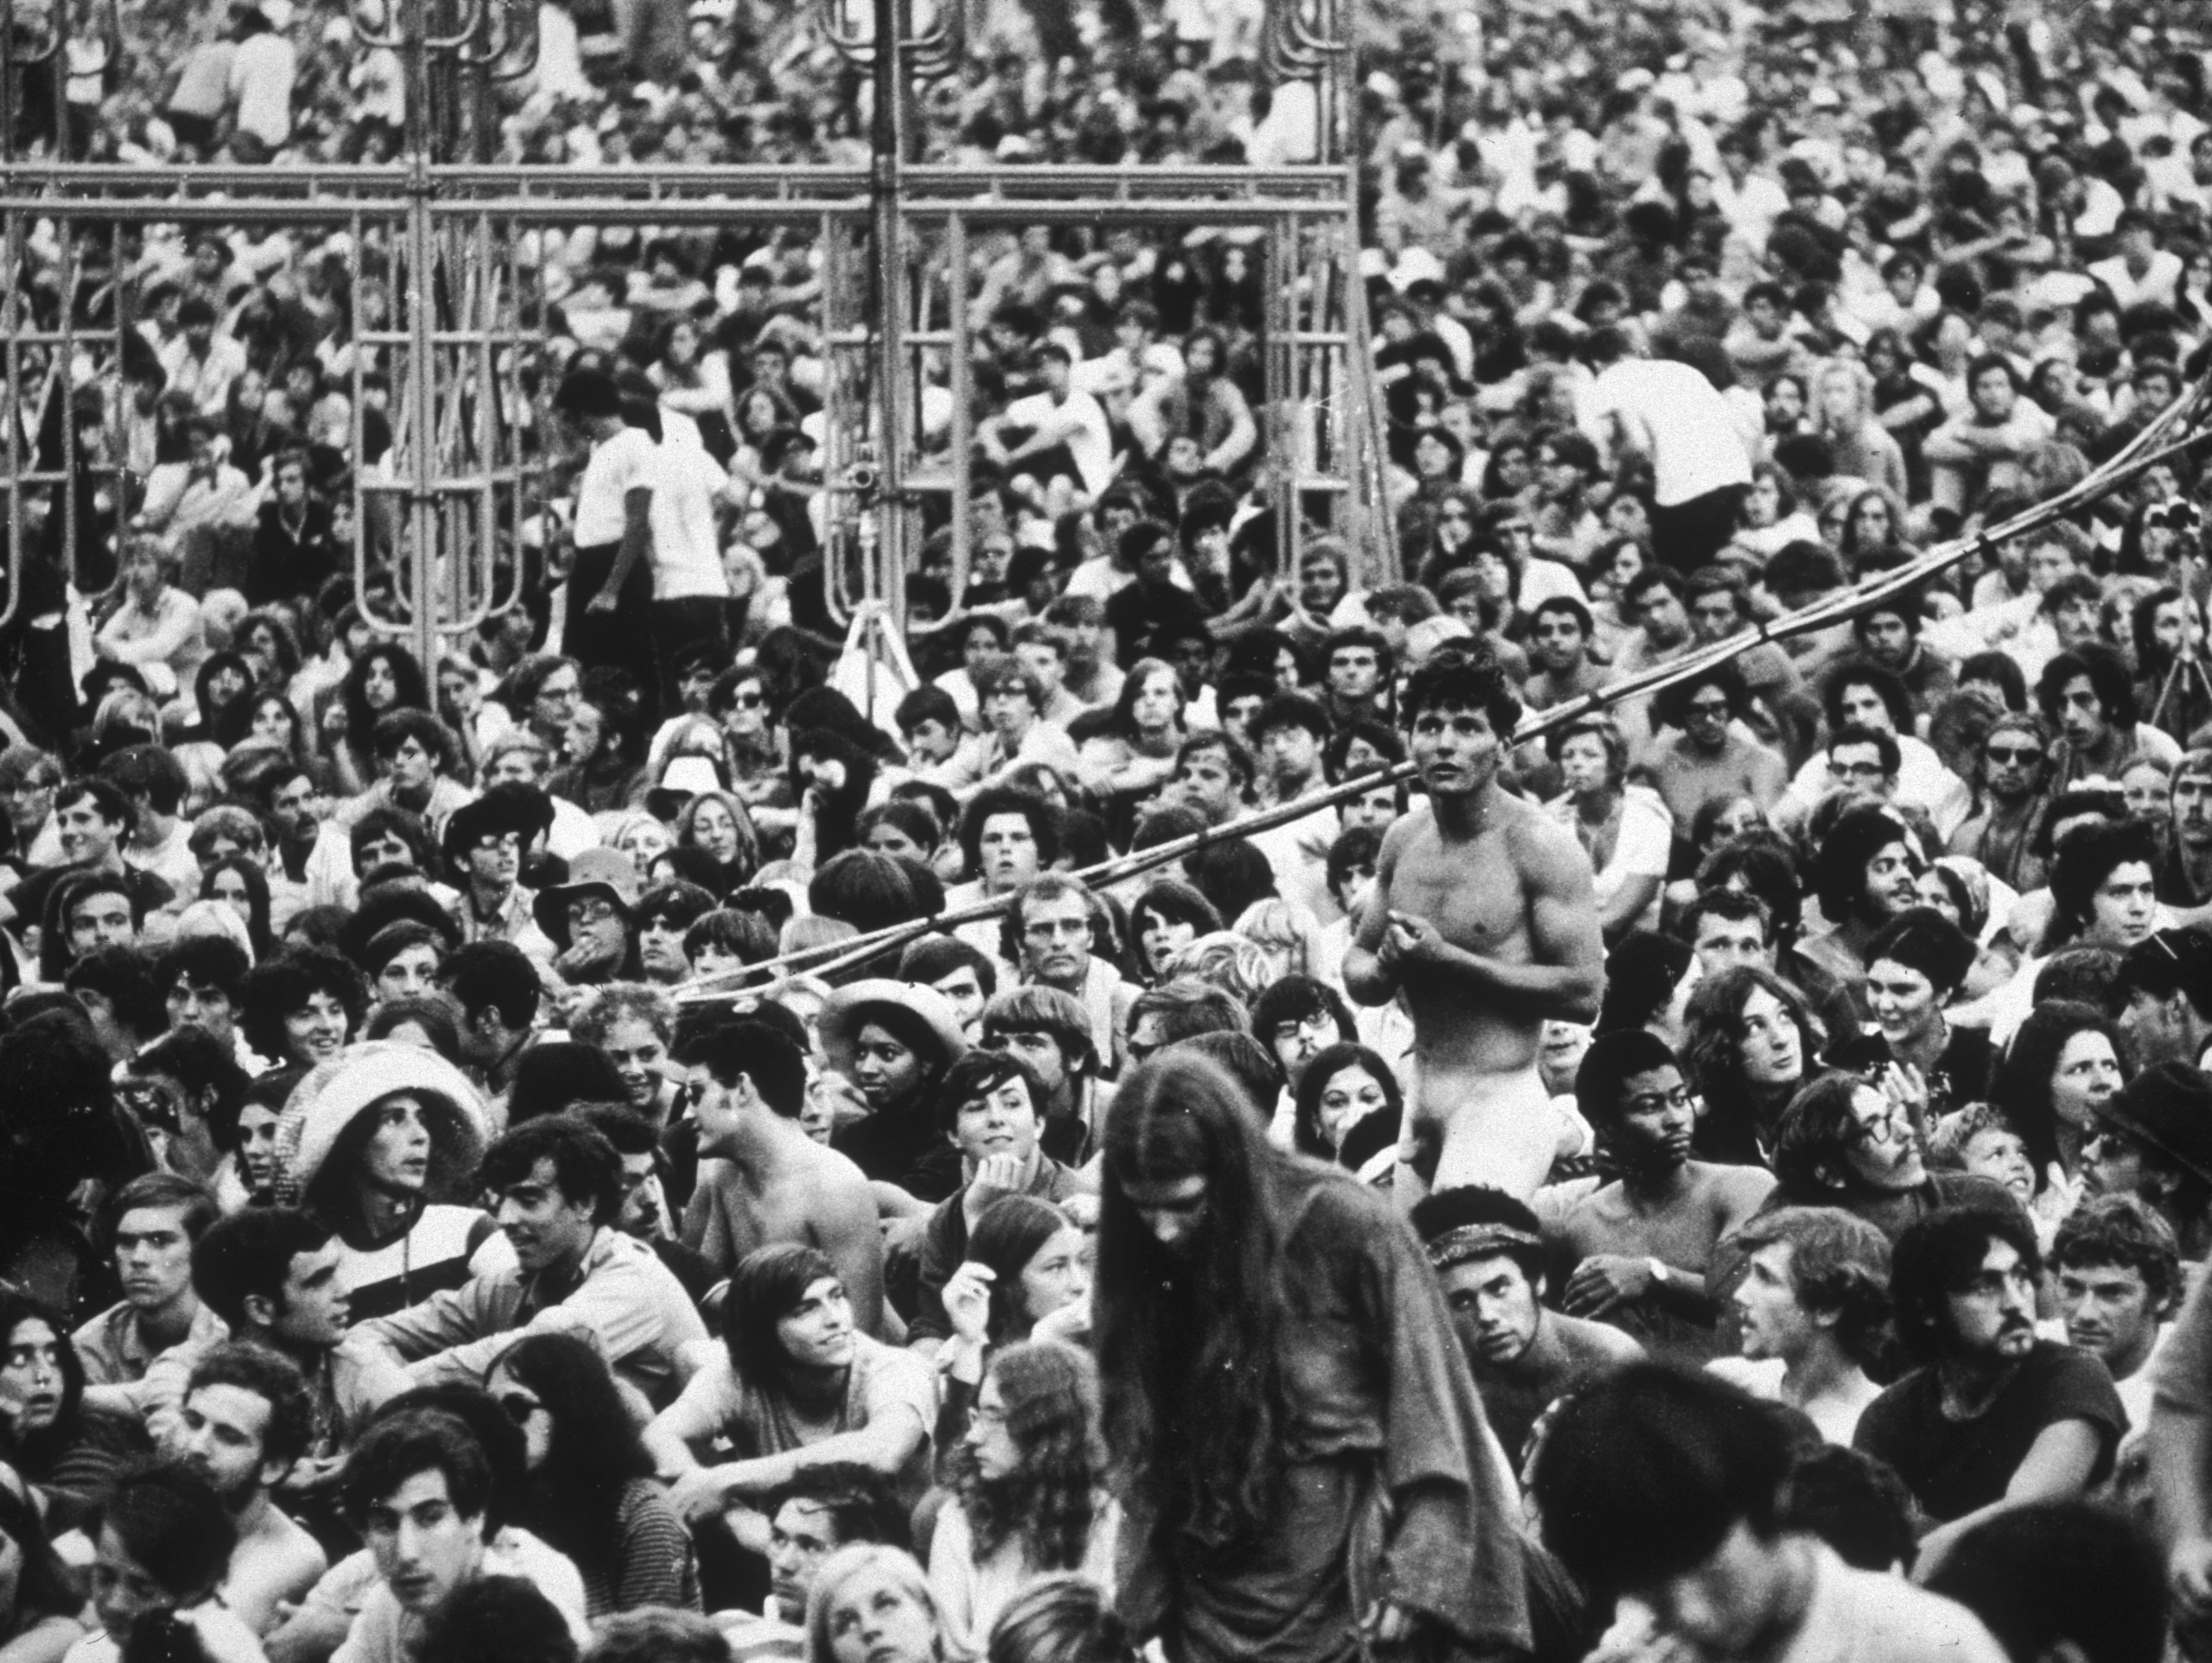 La Fiera della Musica e delle Arti di Woodstock, meglio conosciuto con il più semplice 'festival di Woodstock', fu una manifestazione che si svolse a Bethel, una piccola città rurale nello stato di New York, dal 15 al 18 agosto del 1969, all'apice della diffusione della cultura hippie. Vi si riferisce spesso con l'espressione 3 Days of Peace & Rock Music, "tre giorni di pace e musica rock".